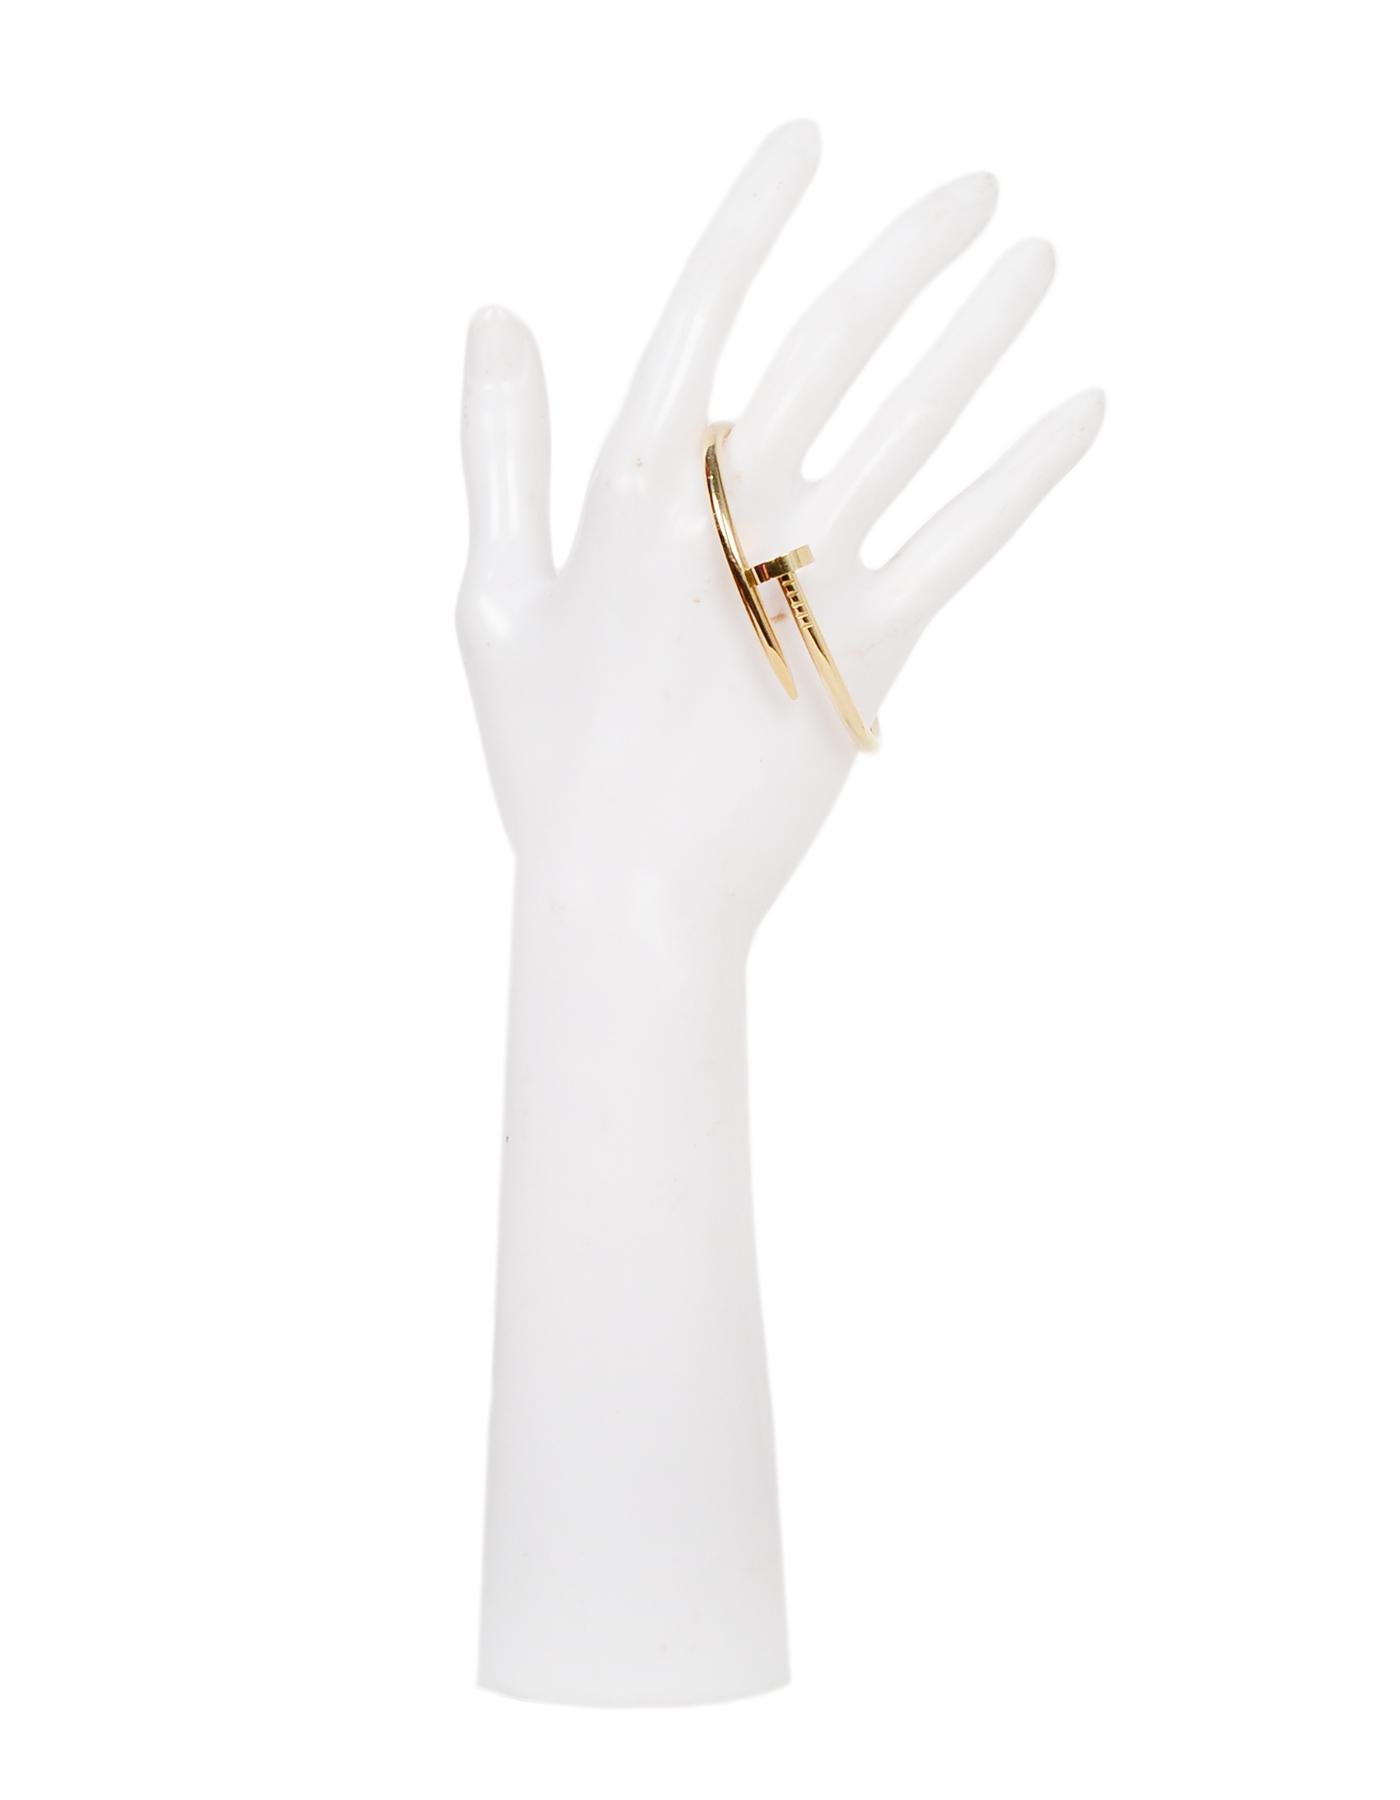 Cartier 18k Gelbgold Juste Un Clou Nagel-Armband sz 15. Bitte beachten Sie dieses Modell läuft groß und passt wie Größe 16 in der Cartier Love-Armband

Farbe: Gold
MATERIALIEN: 18k Gelbgold
Punzierungen: 750
Allgemeiner Zustand: Ausgezeichneter